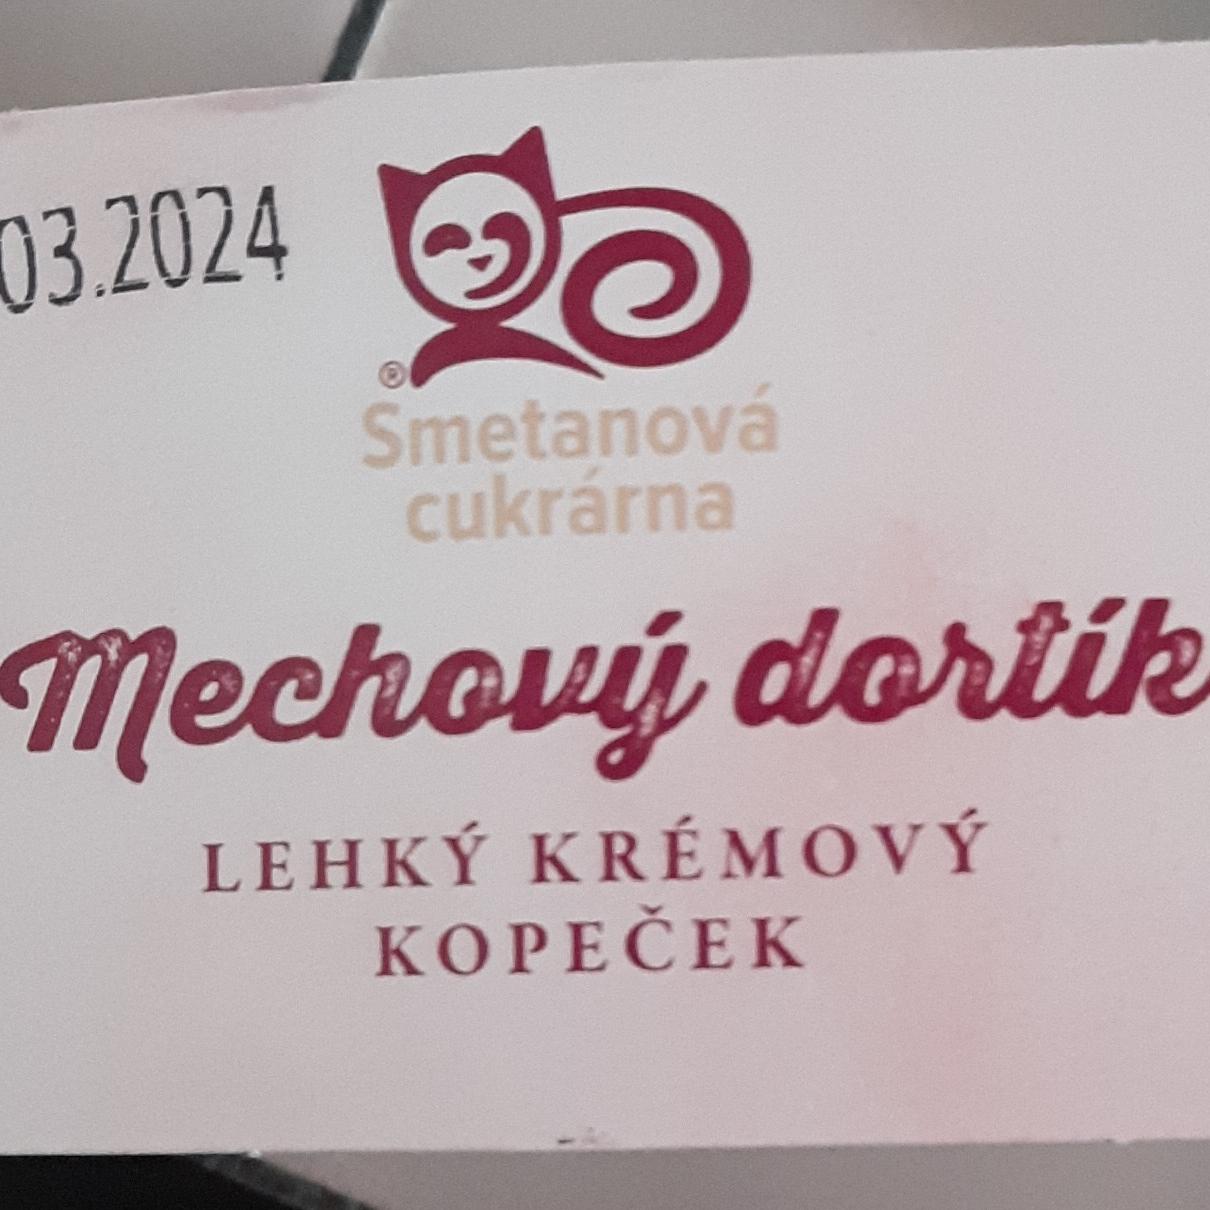 Fotografie - Mechový dortík Smetanová cukrárna